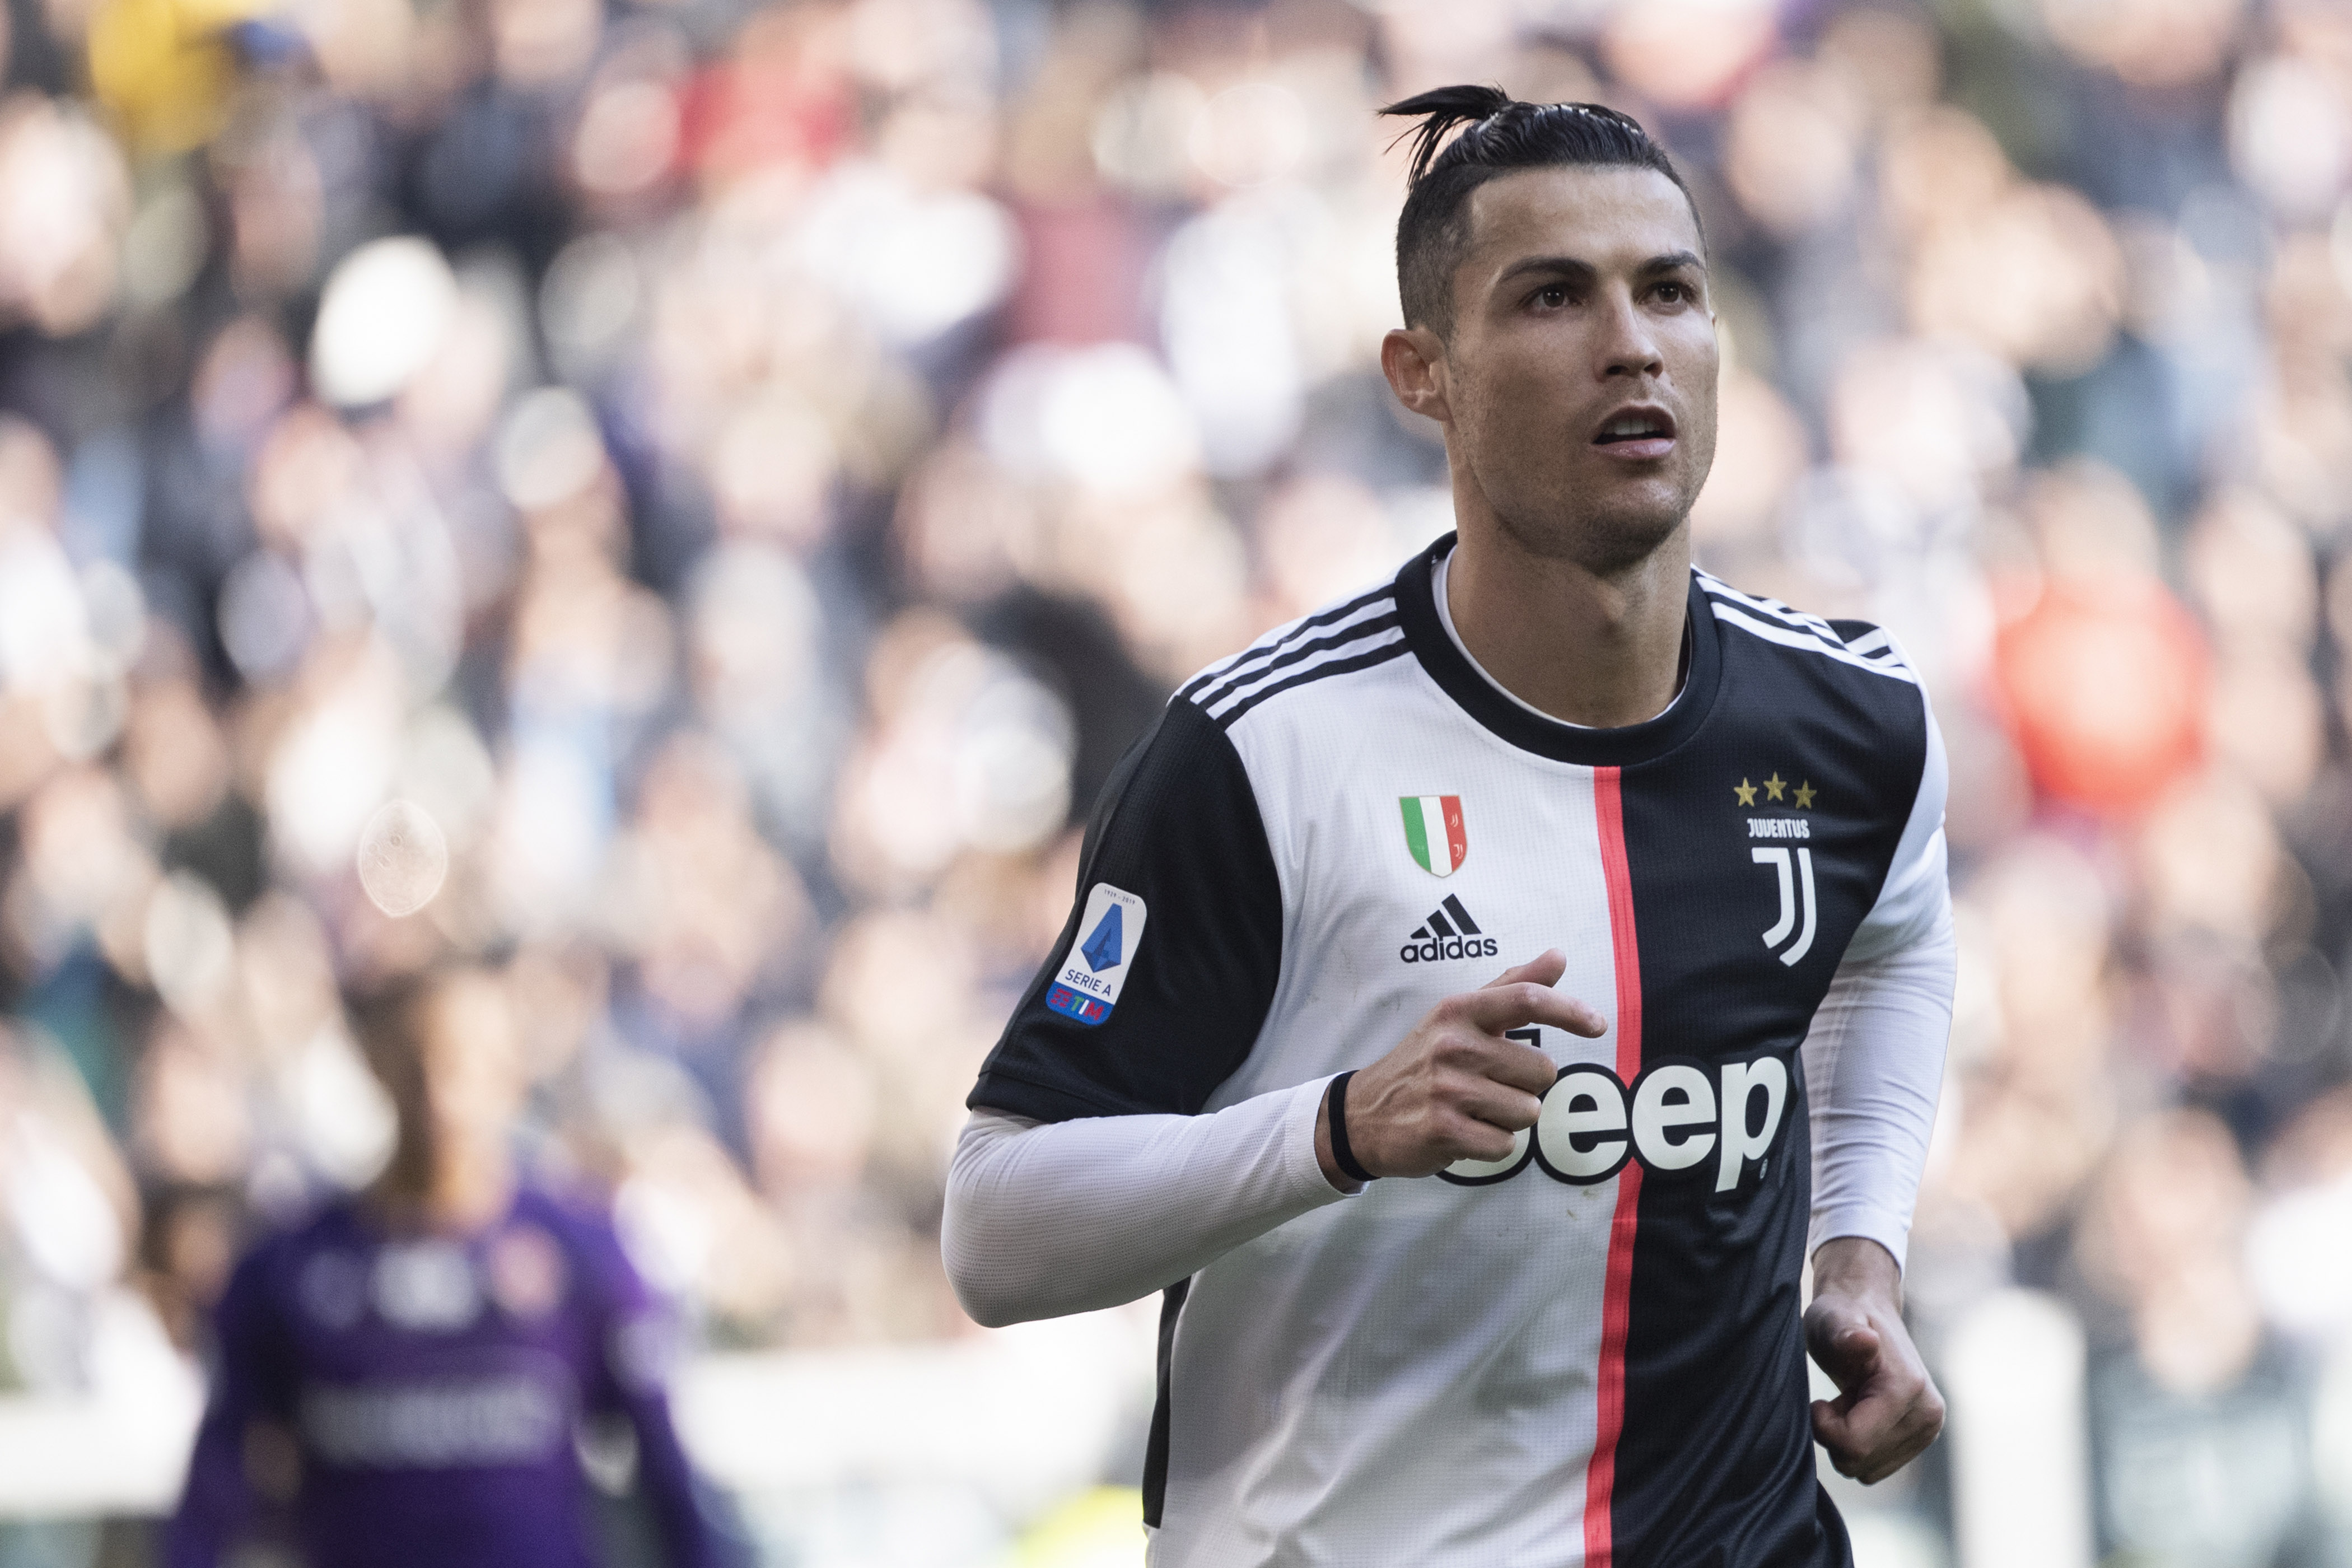 Cristiano Ronaldo – Portugal – Juventus – 21 gols – 42 pontos